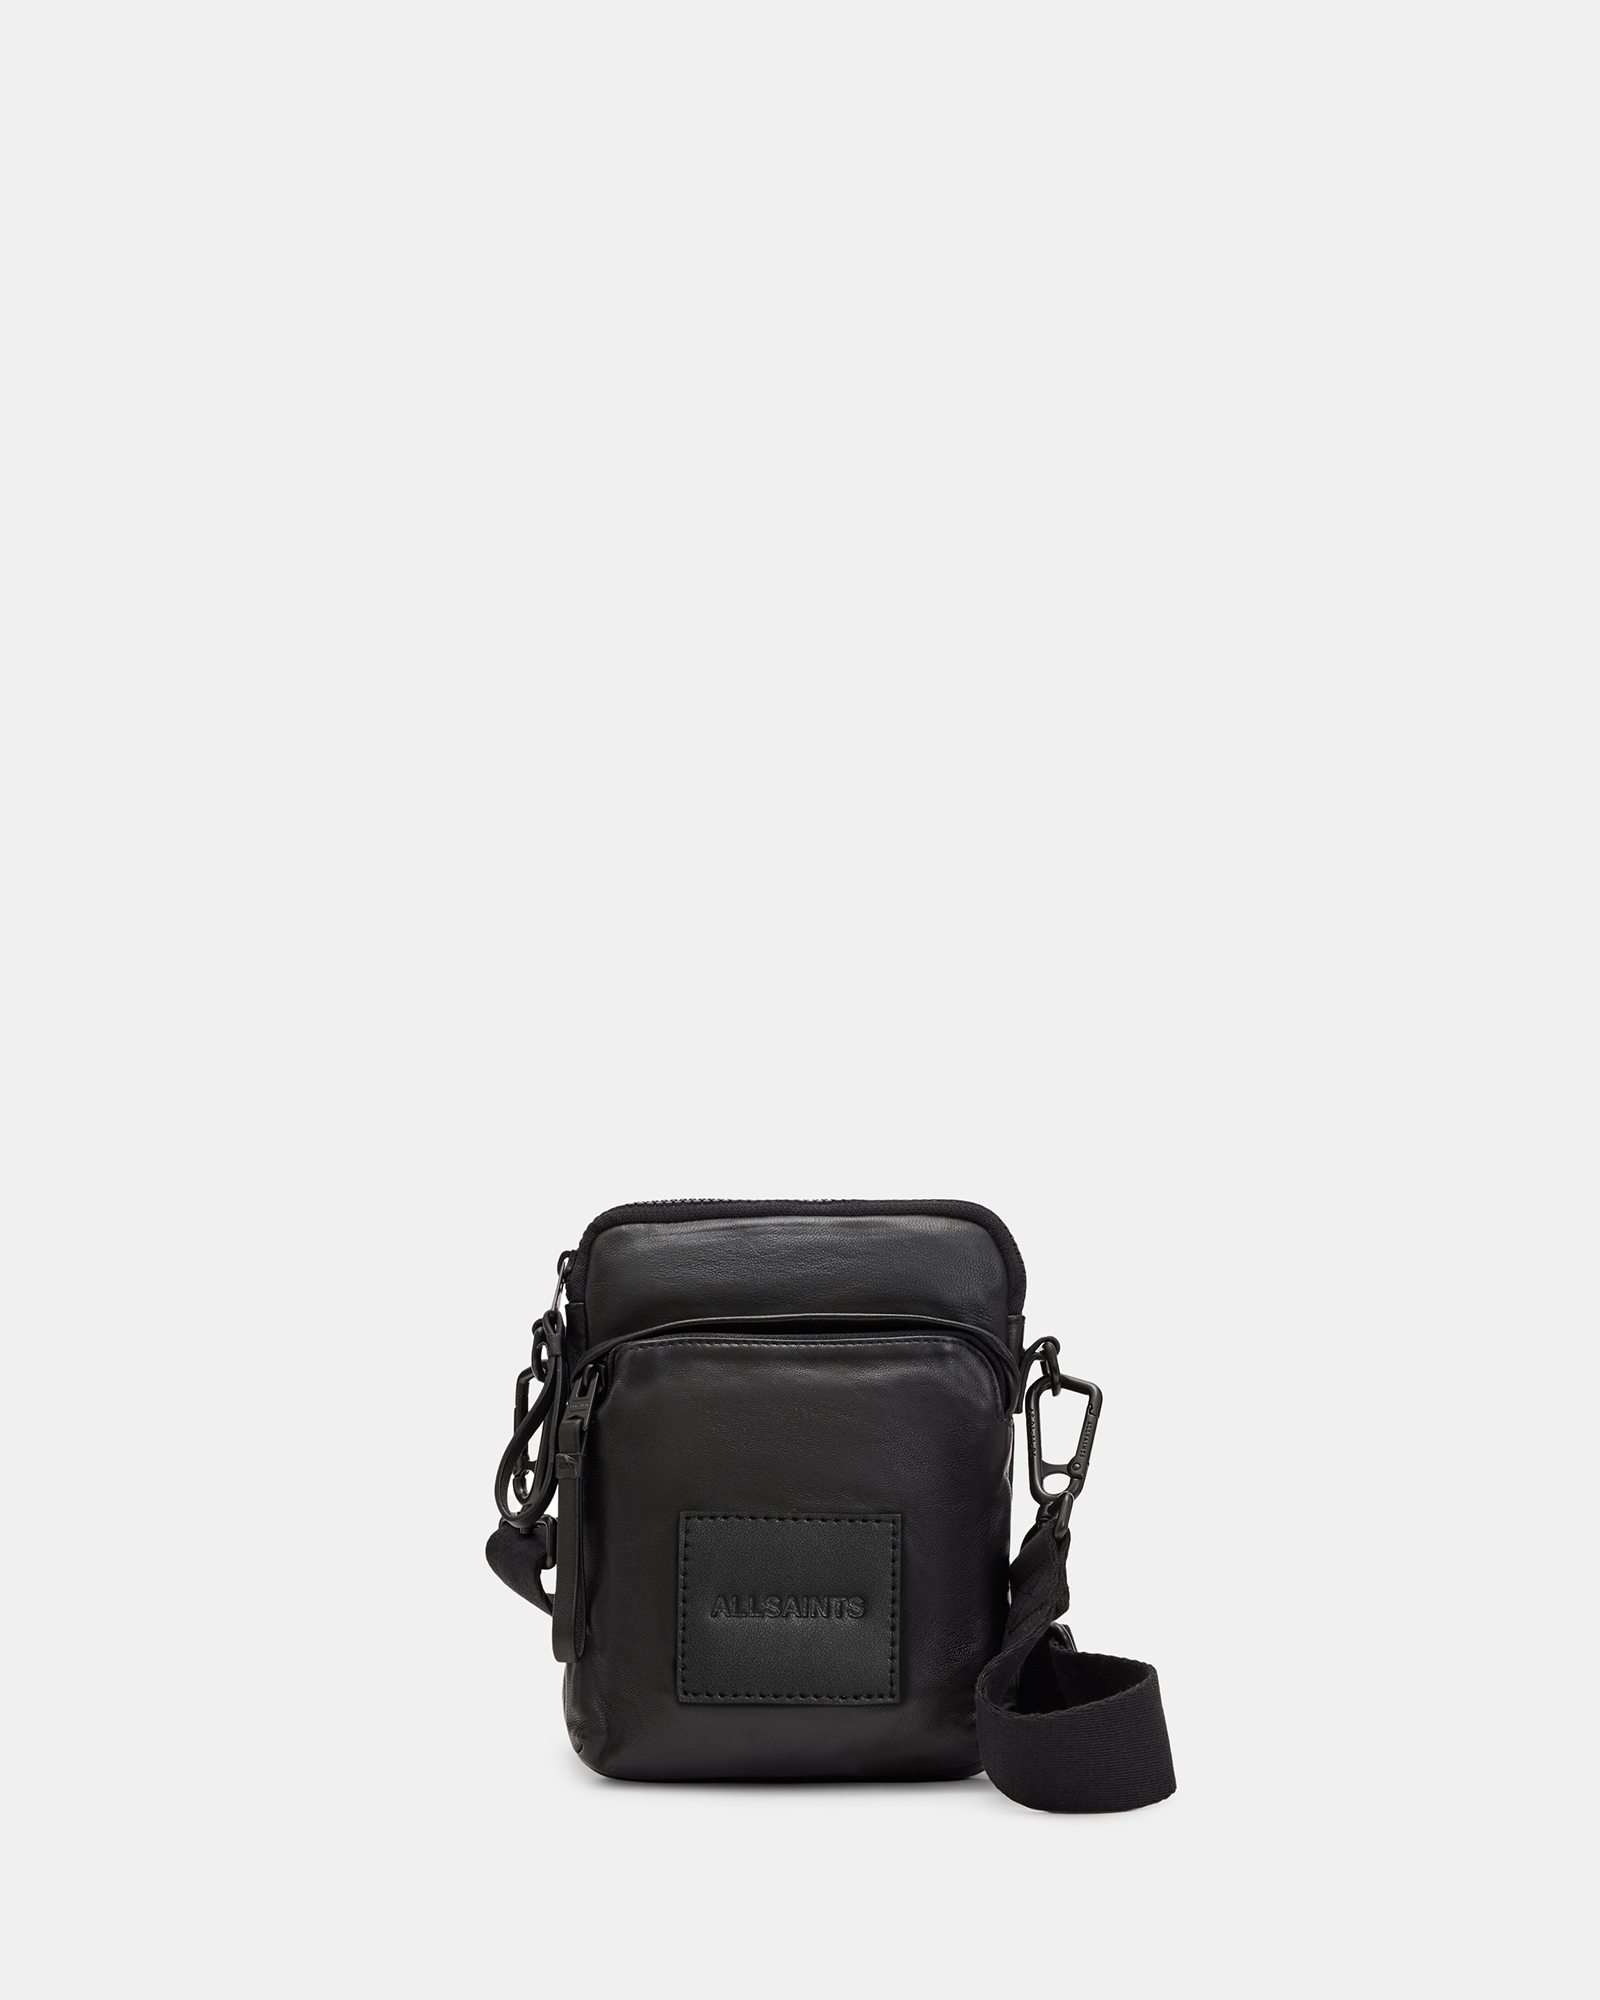 AllSaints Falcon Leather Pouch Bag,, Black